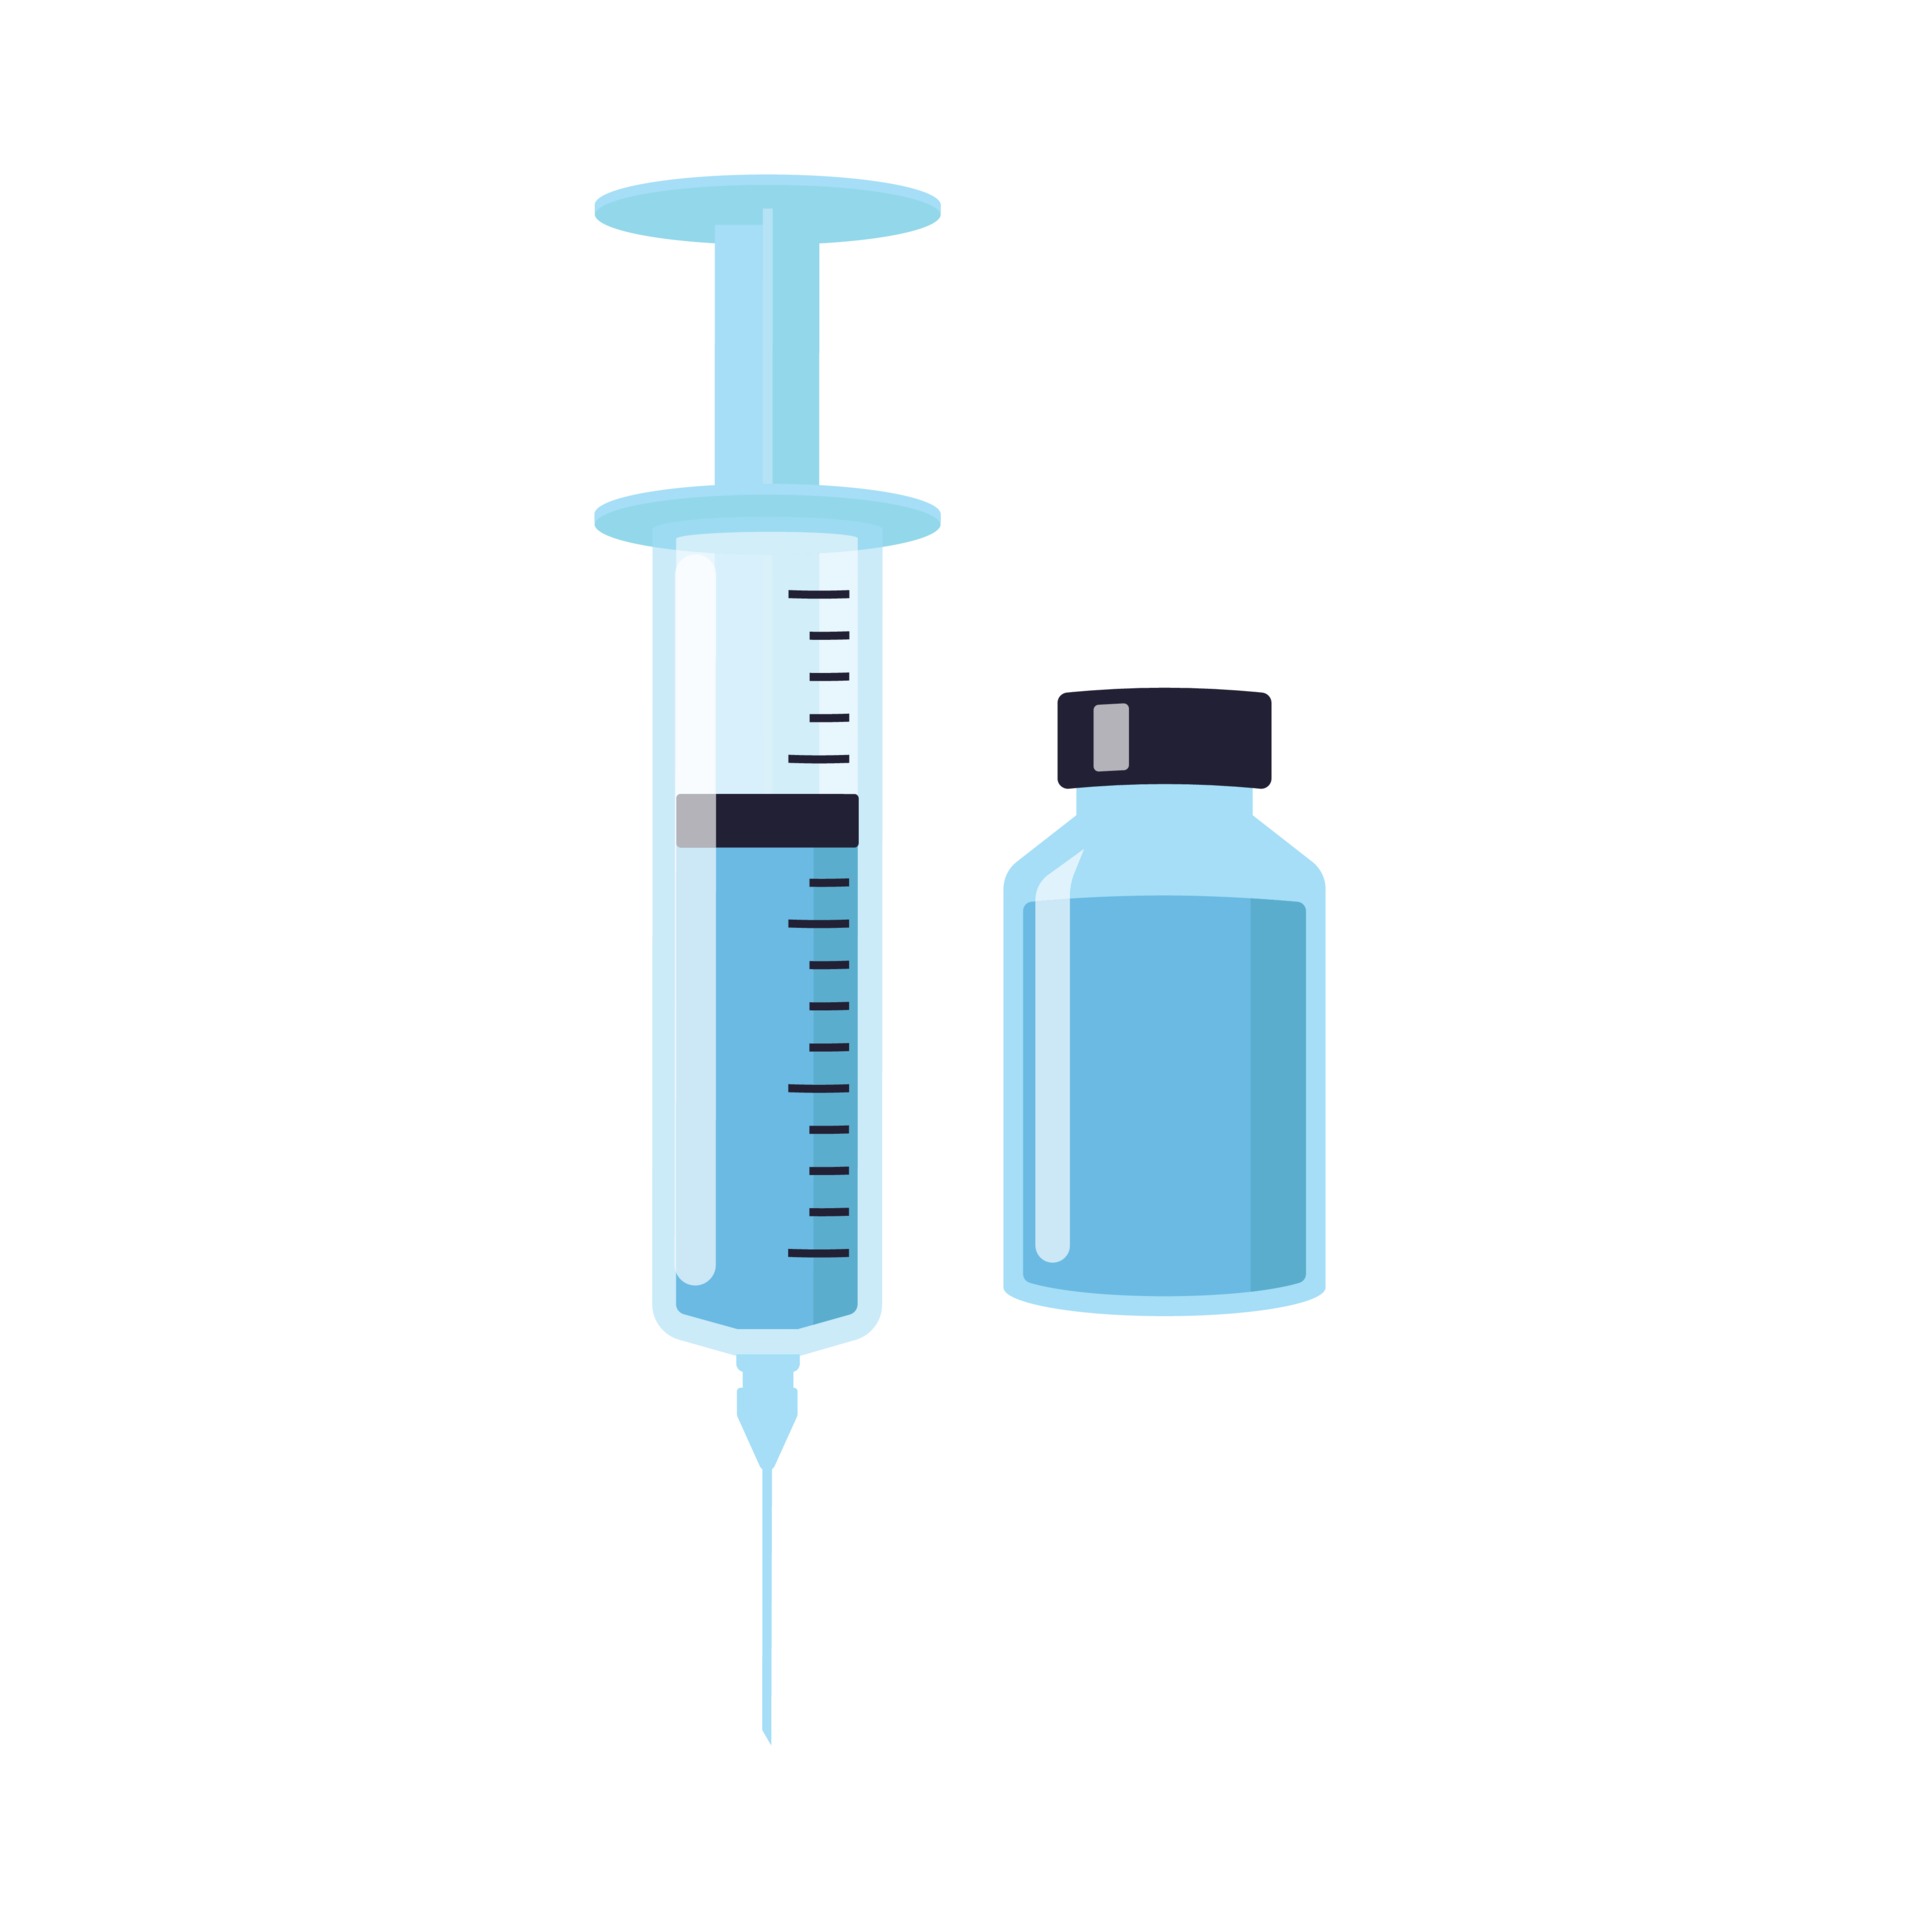 注射器和疫苗瓶插图0